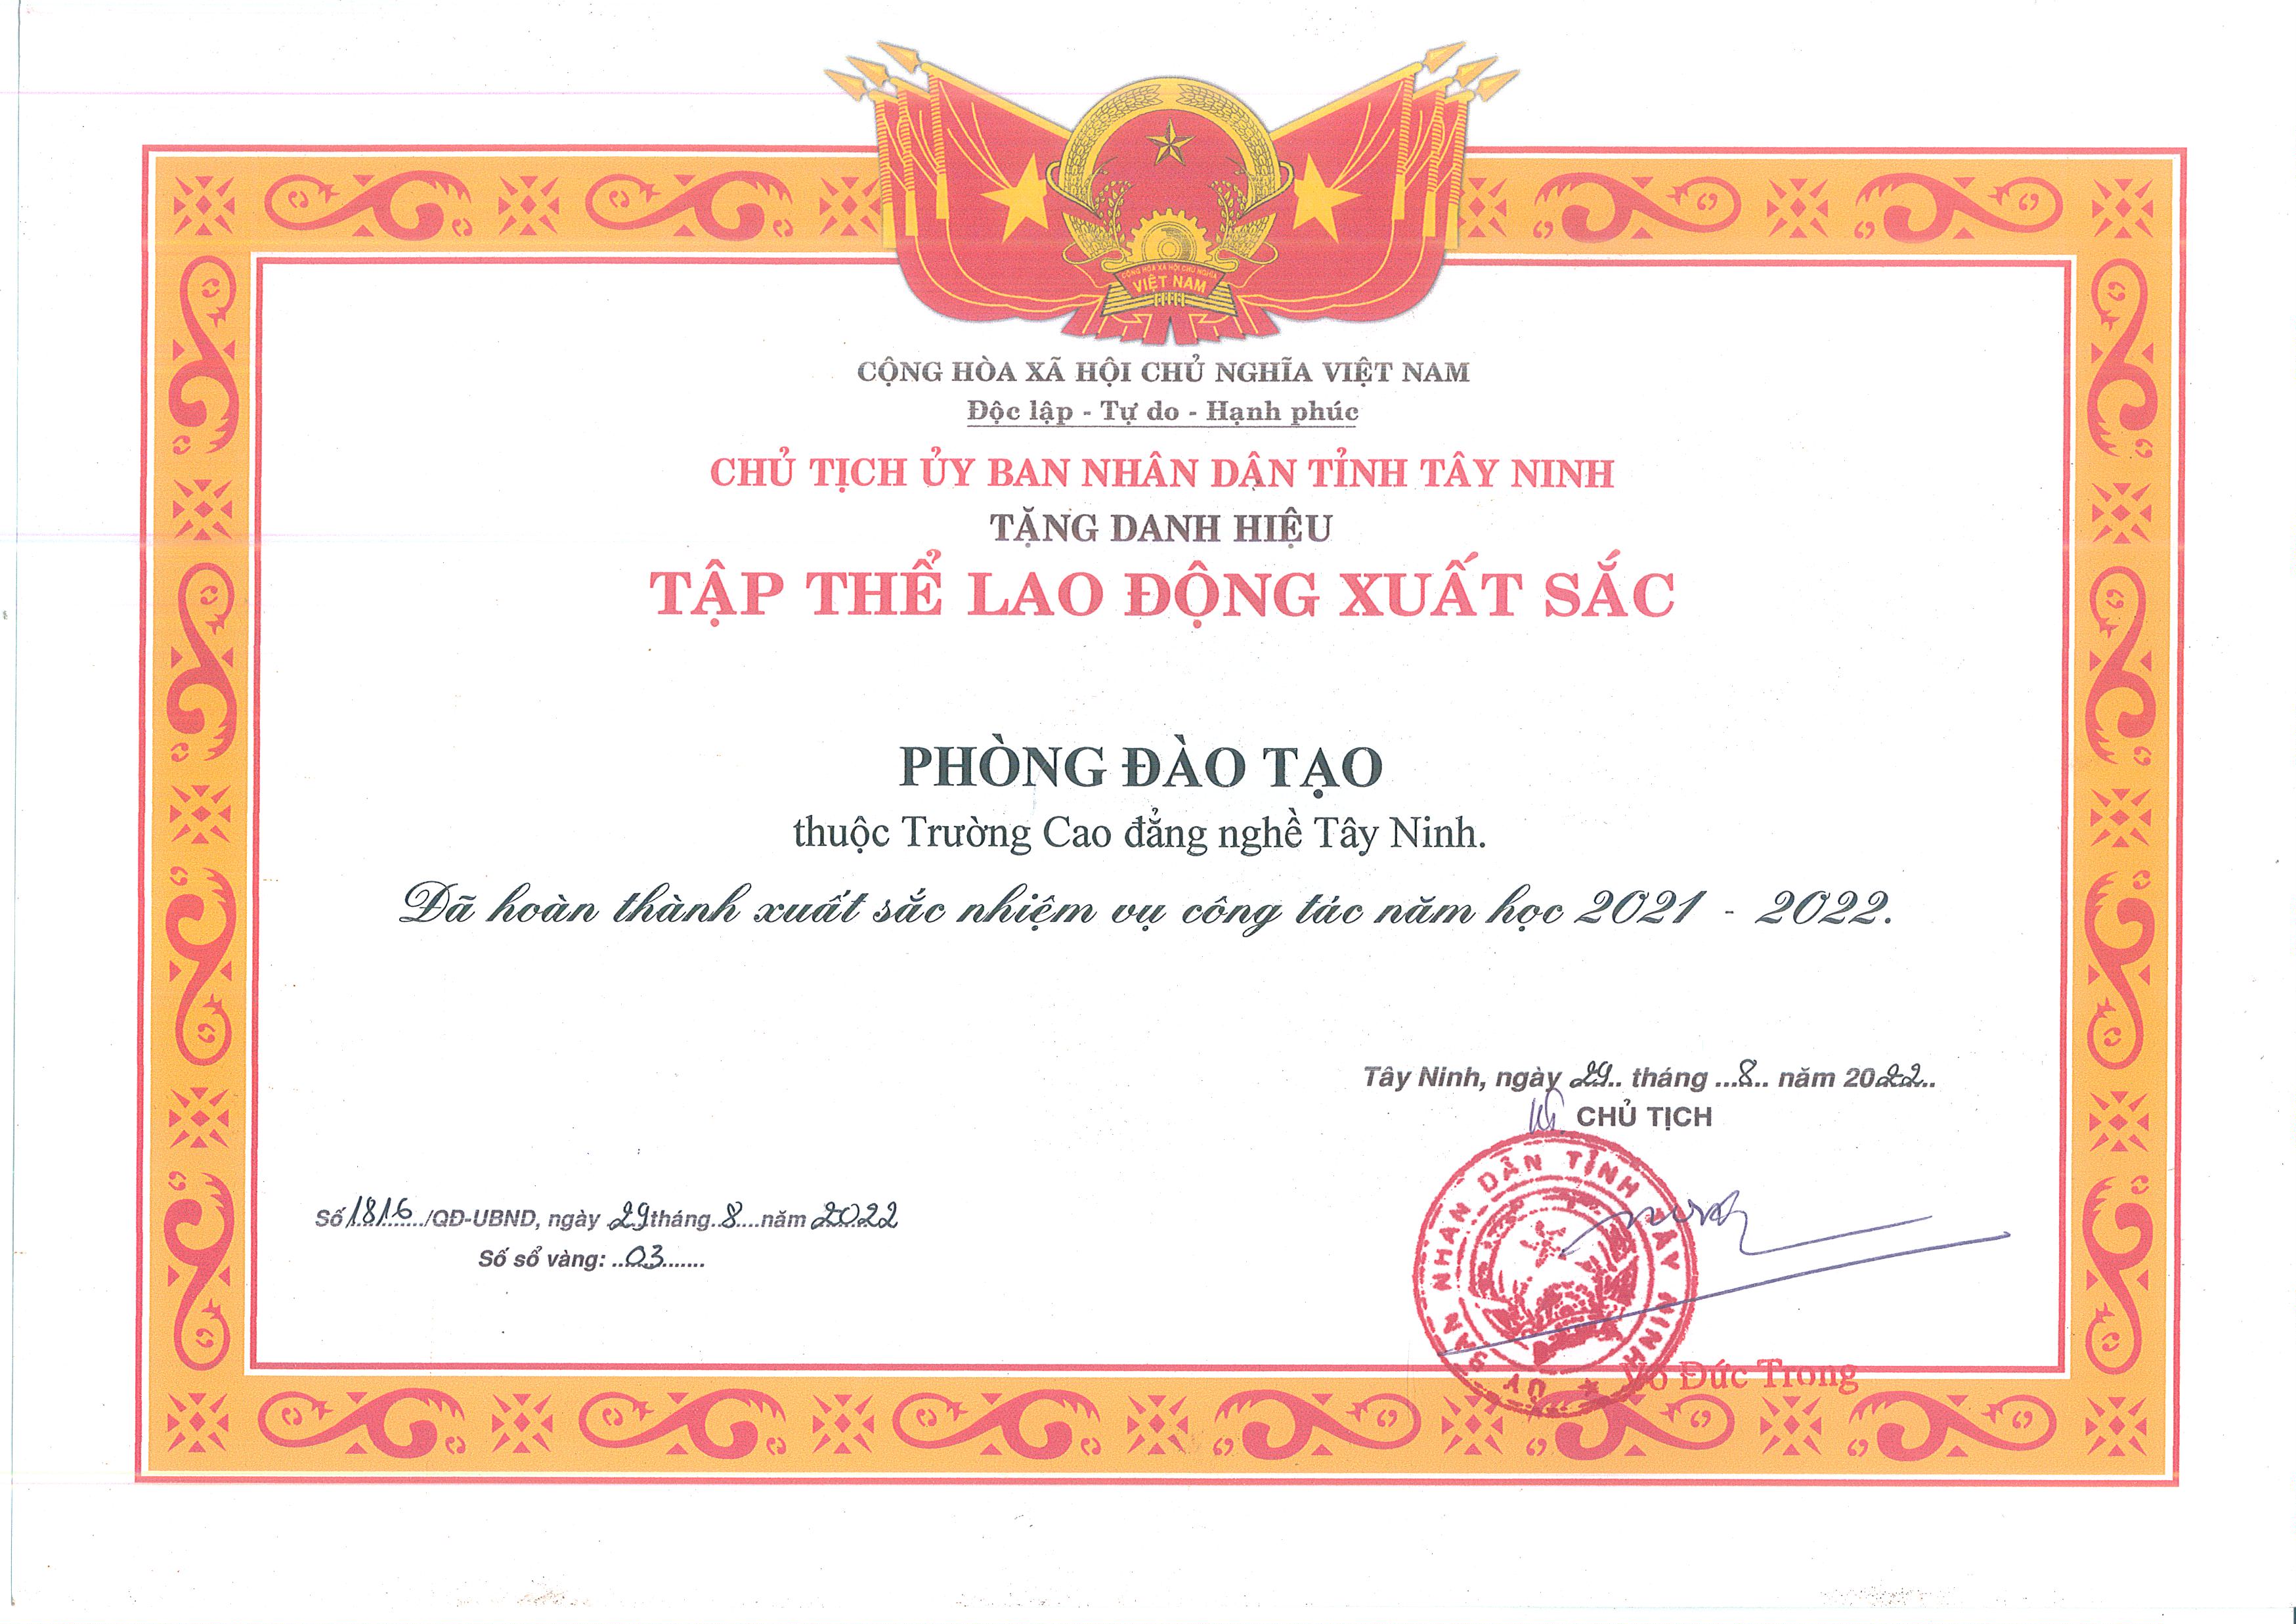 Phòng Đào tạo trường Cao đẳng nghề Tây Ninh nhận Danh hiệu tập thể lao động xuất sắc của Chủ tịch UBND tỉnh Tây Ninh năm học 2021-2022